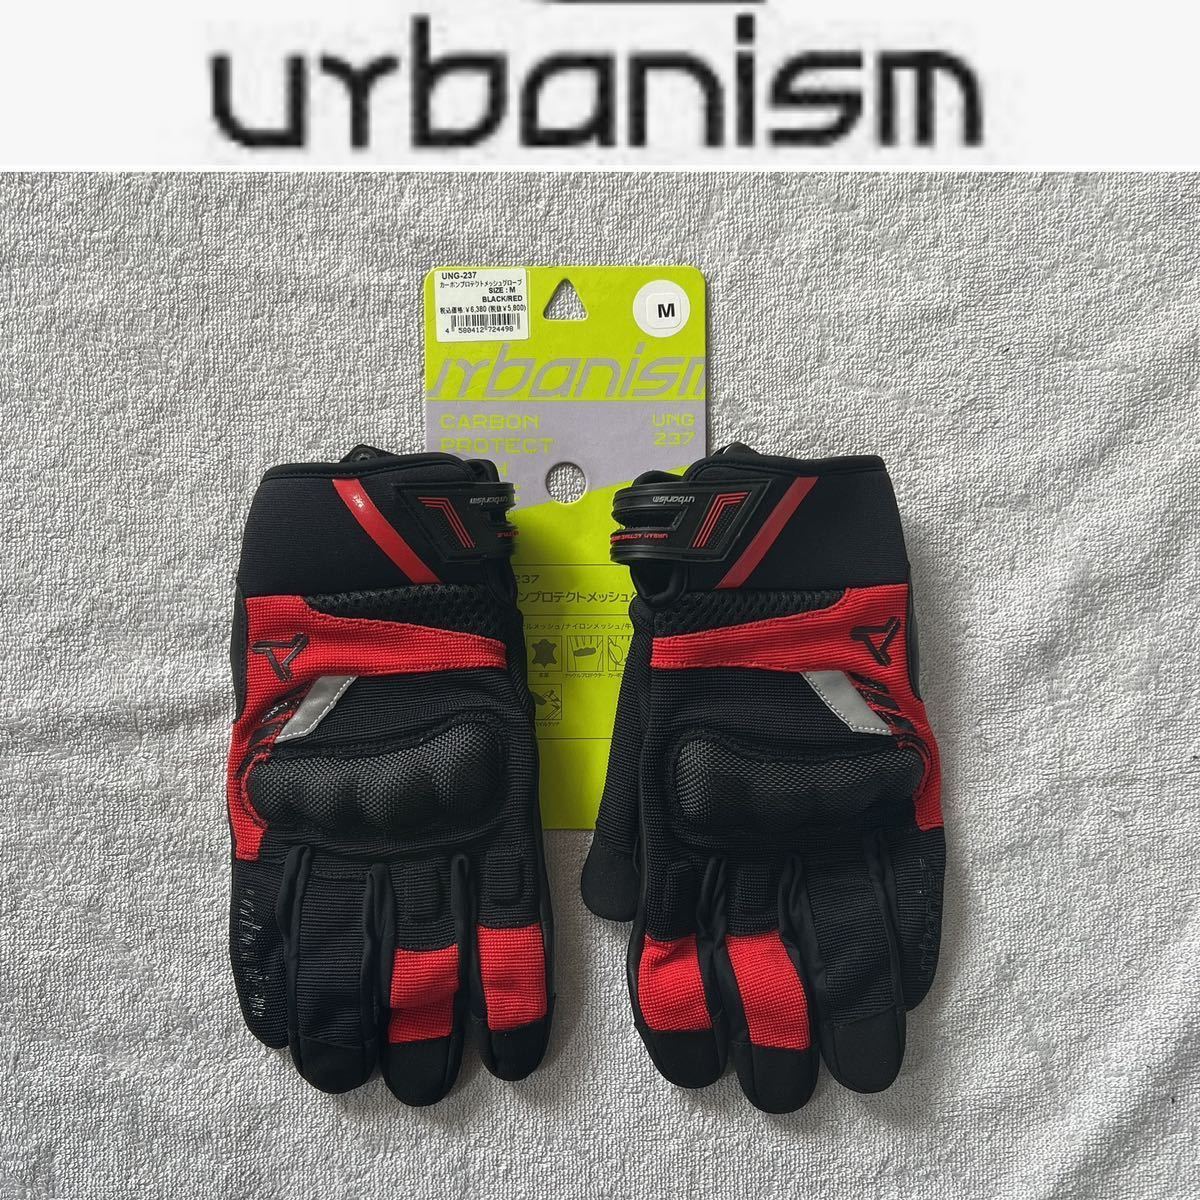 urbanism アーバニズム カーボンプロテクトメッシュグローブ グローブ UNG-237 BLACK/RED Mサイズ スマホ対応 牛革 A50413-8_画像1